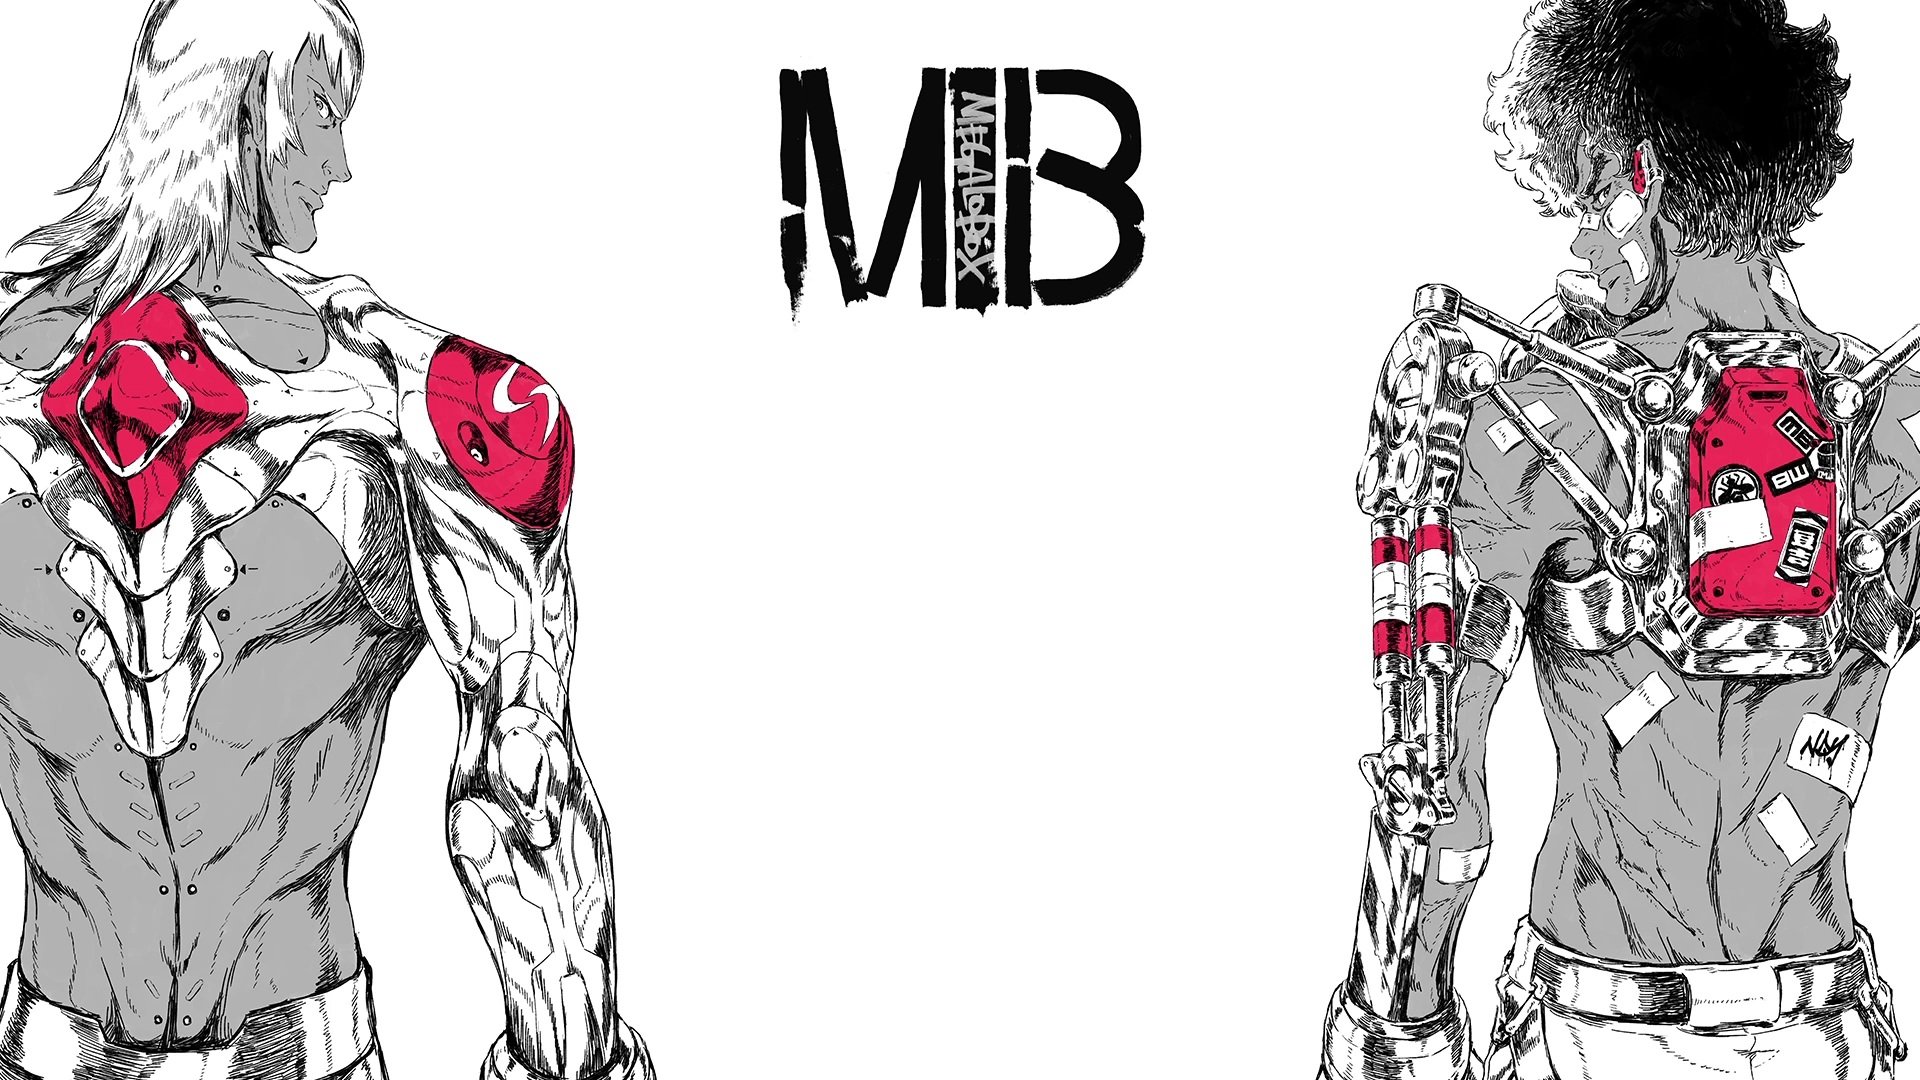 MEGALO BOX Joe MEGALO BOX Yuuri Megalo Box Anime Anime Boys Two Men Boxing Gloves Gloves Brunette Wh 1920x1080